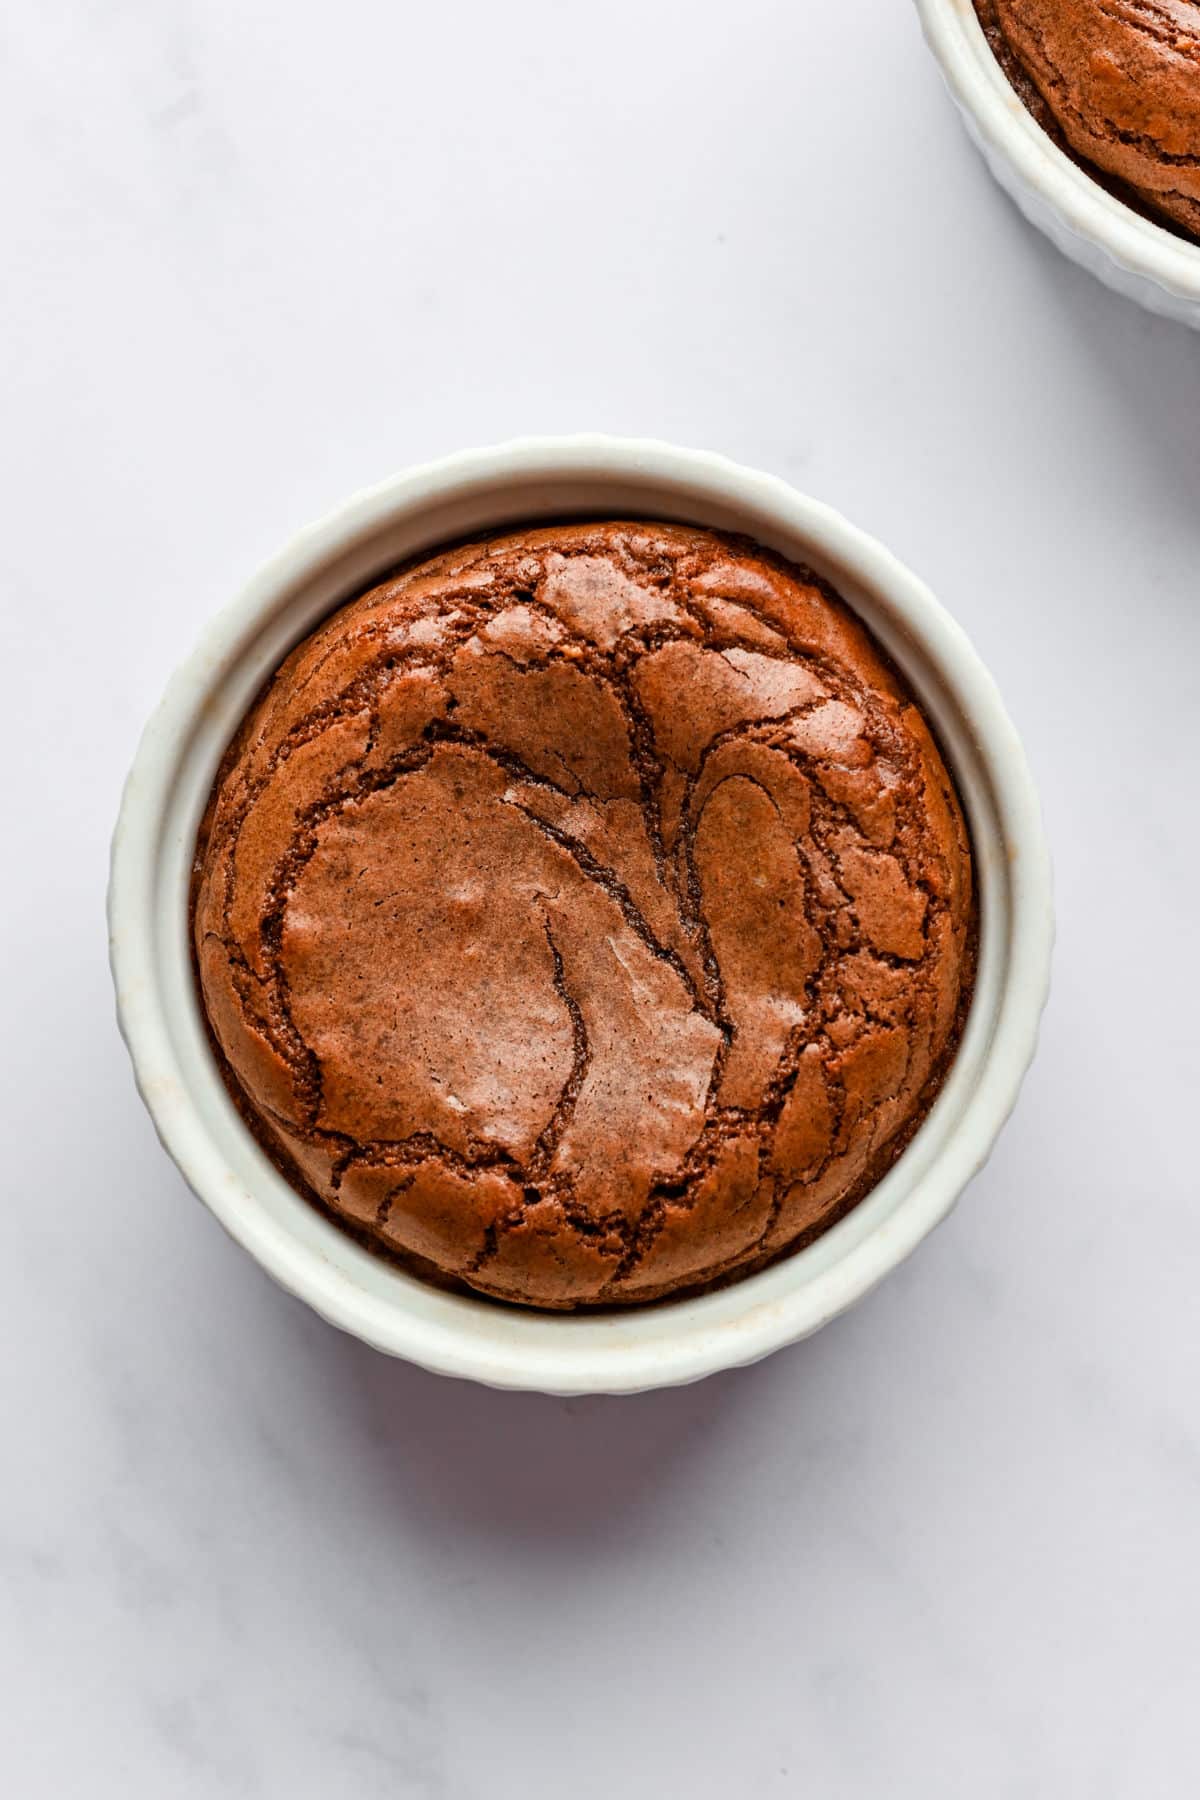 Baked Nutella molten lava cake in a ramekin.